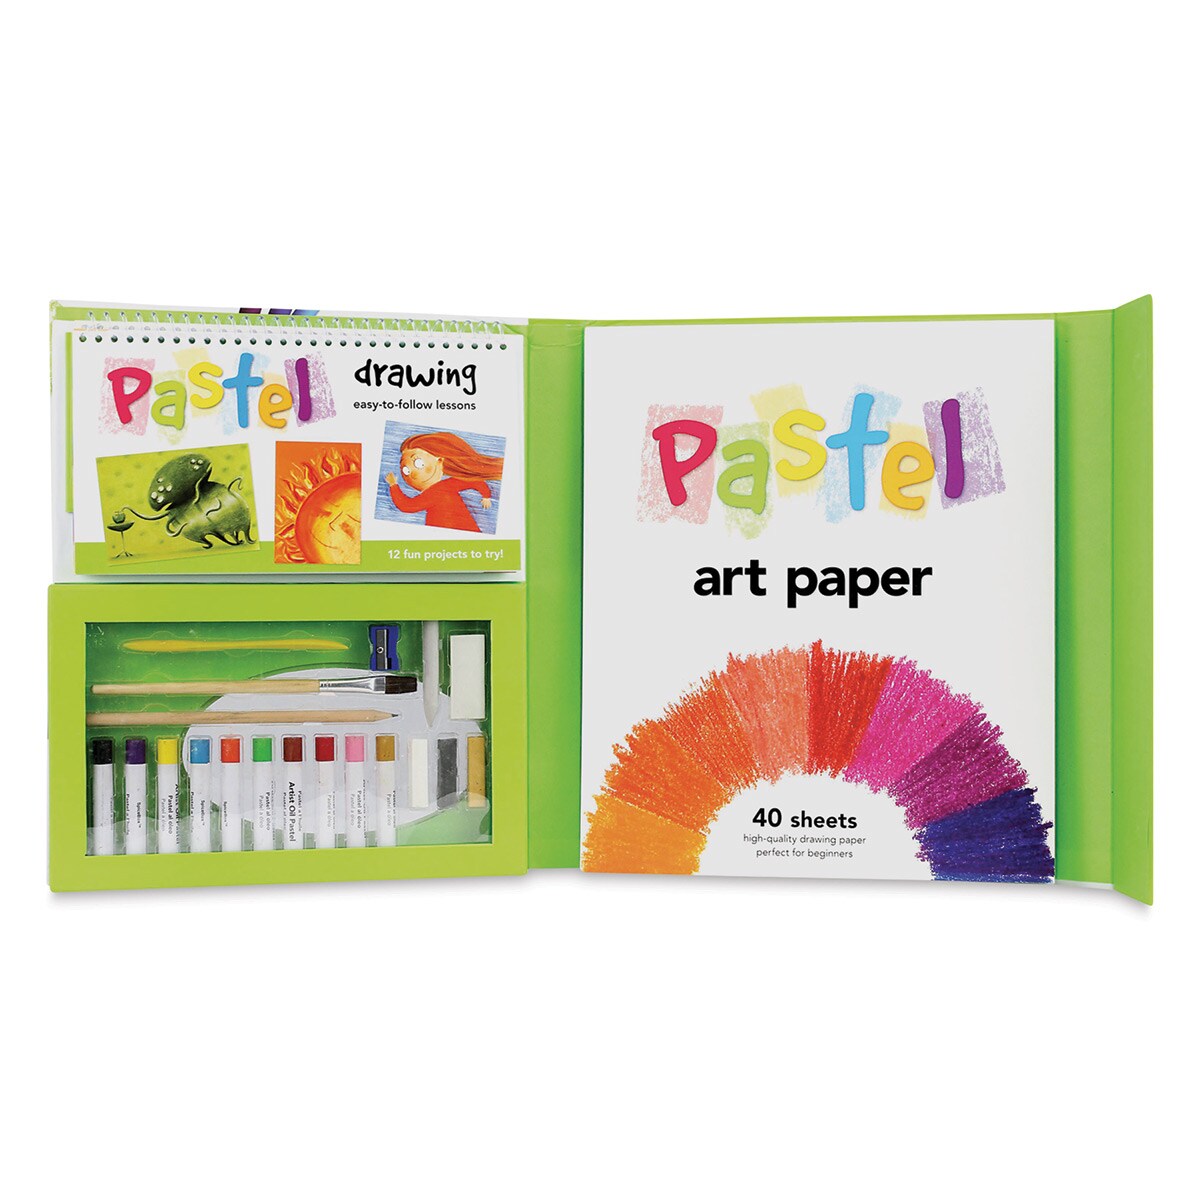 SpiceBox Petit Picasso Graffiti Kit